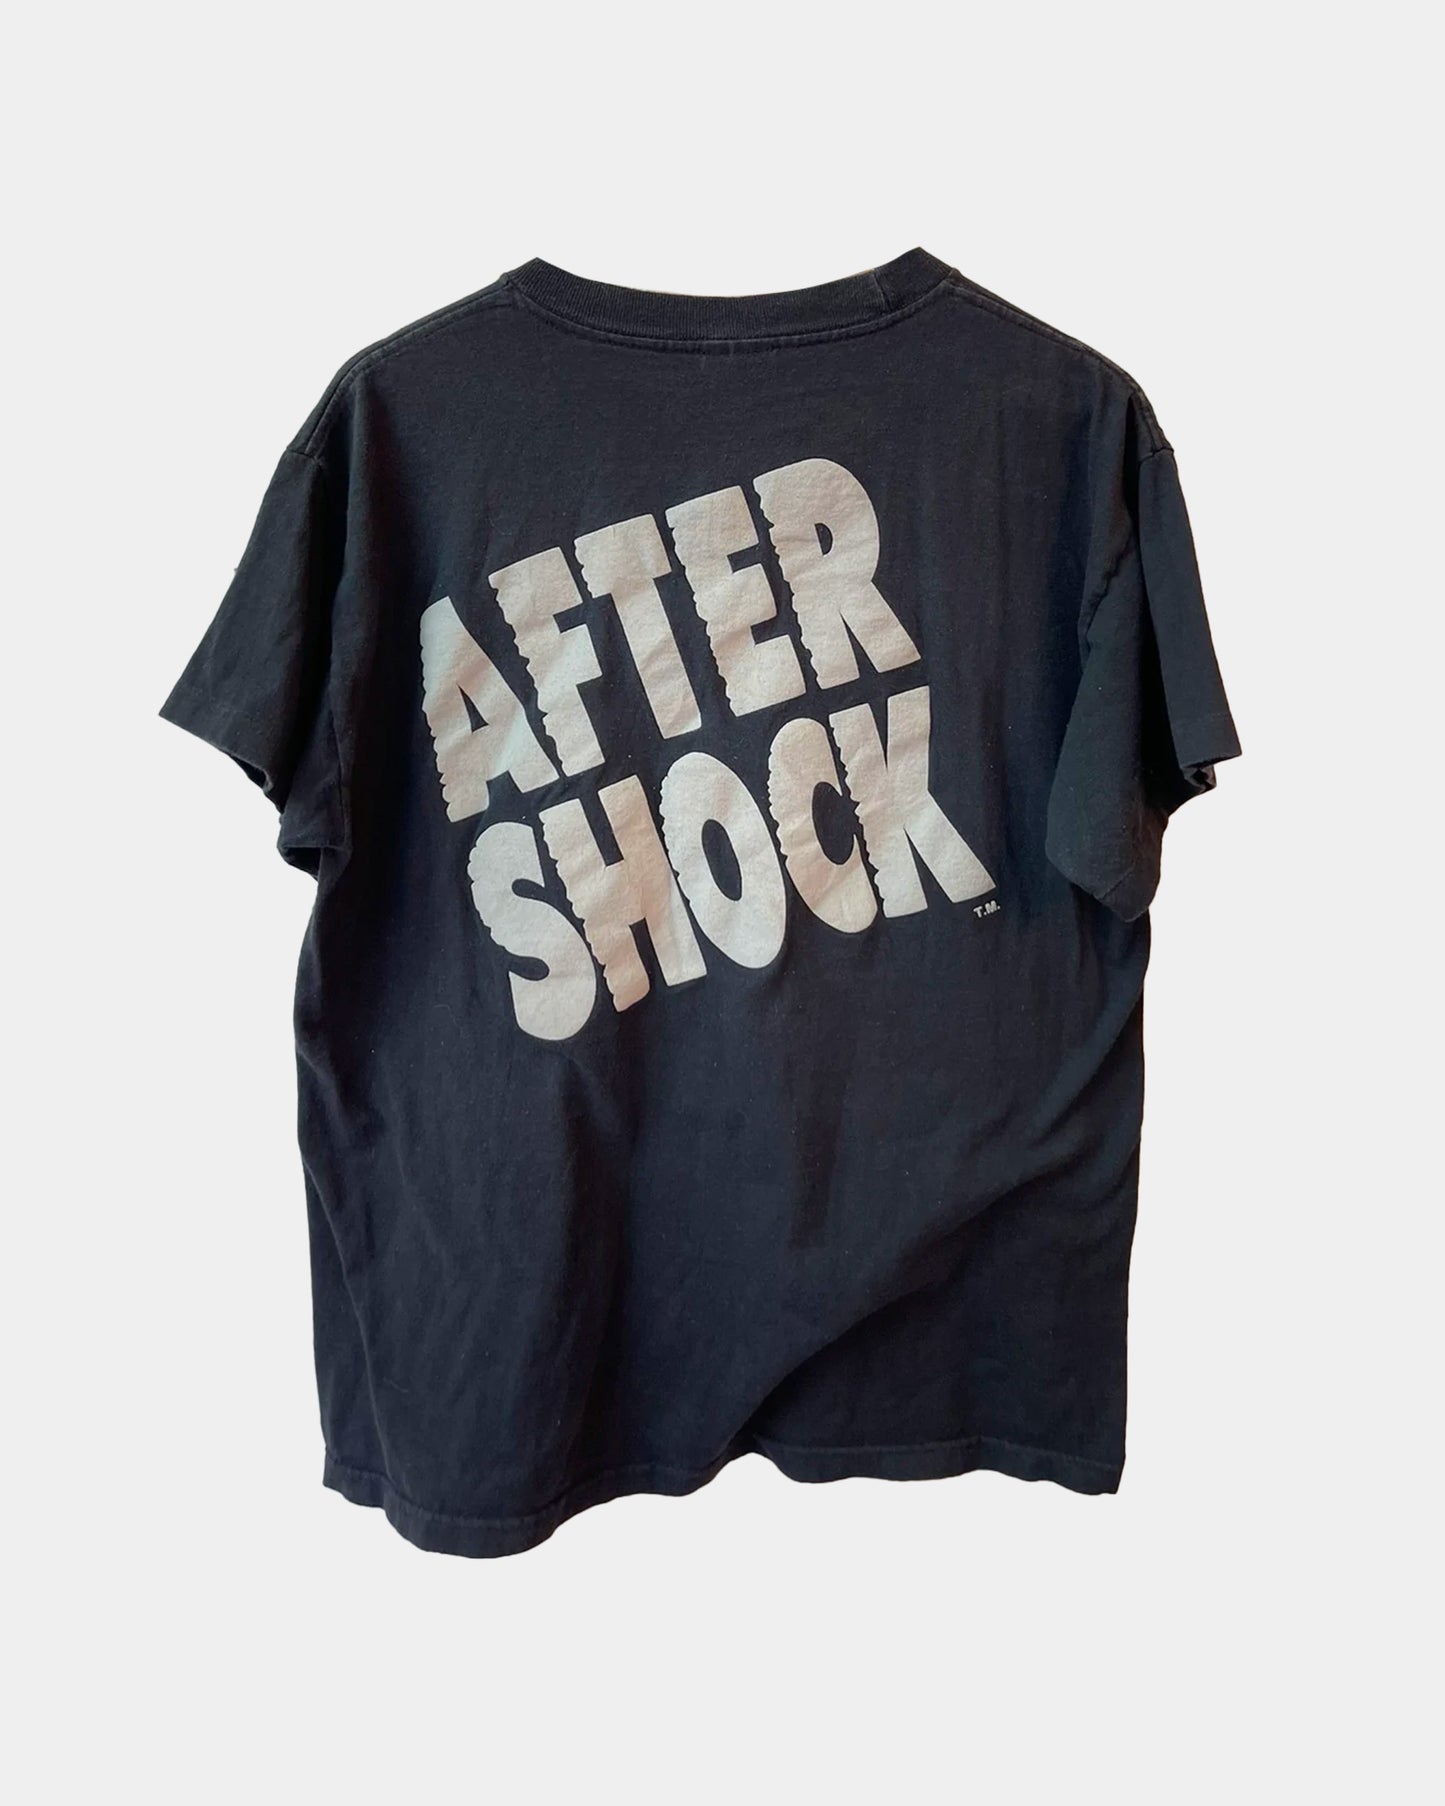 Vintage AFTER SHOCK Shirt 4Gseller